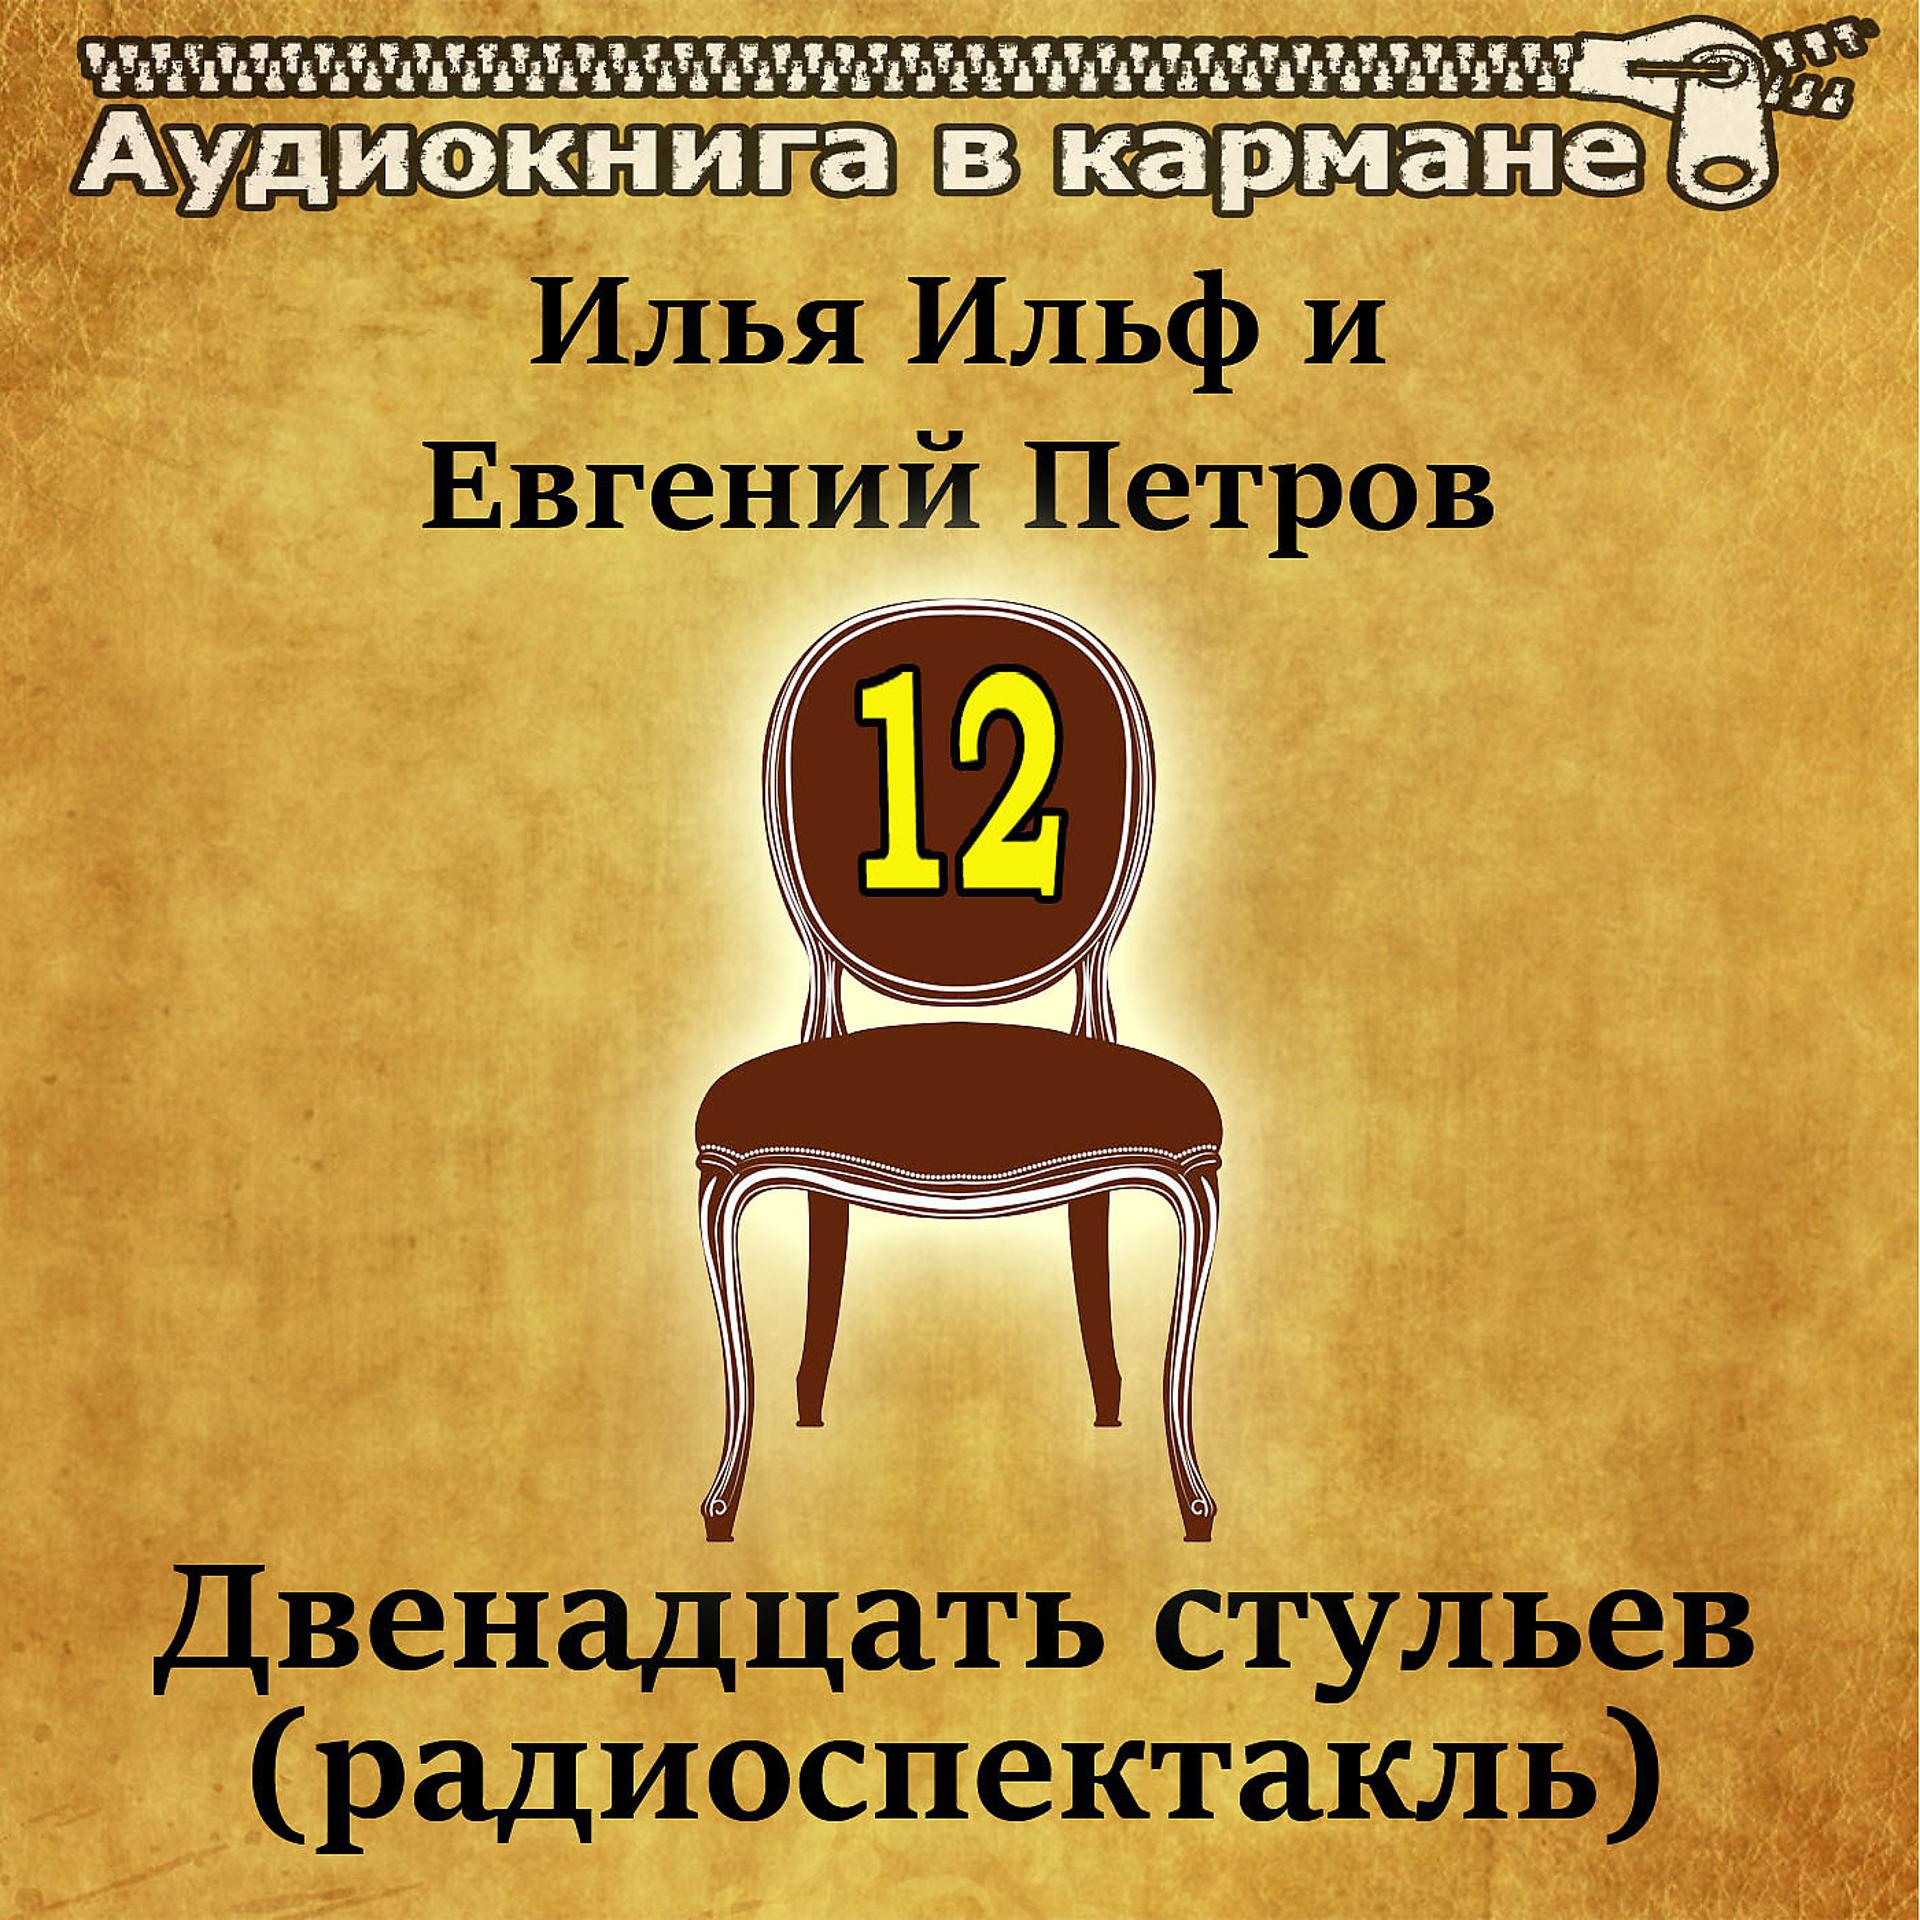 Постер к треку Аудиокнига в кармане, Евгений Весник - Двенадцать стульев, Чт. 2